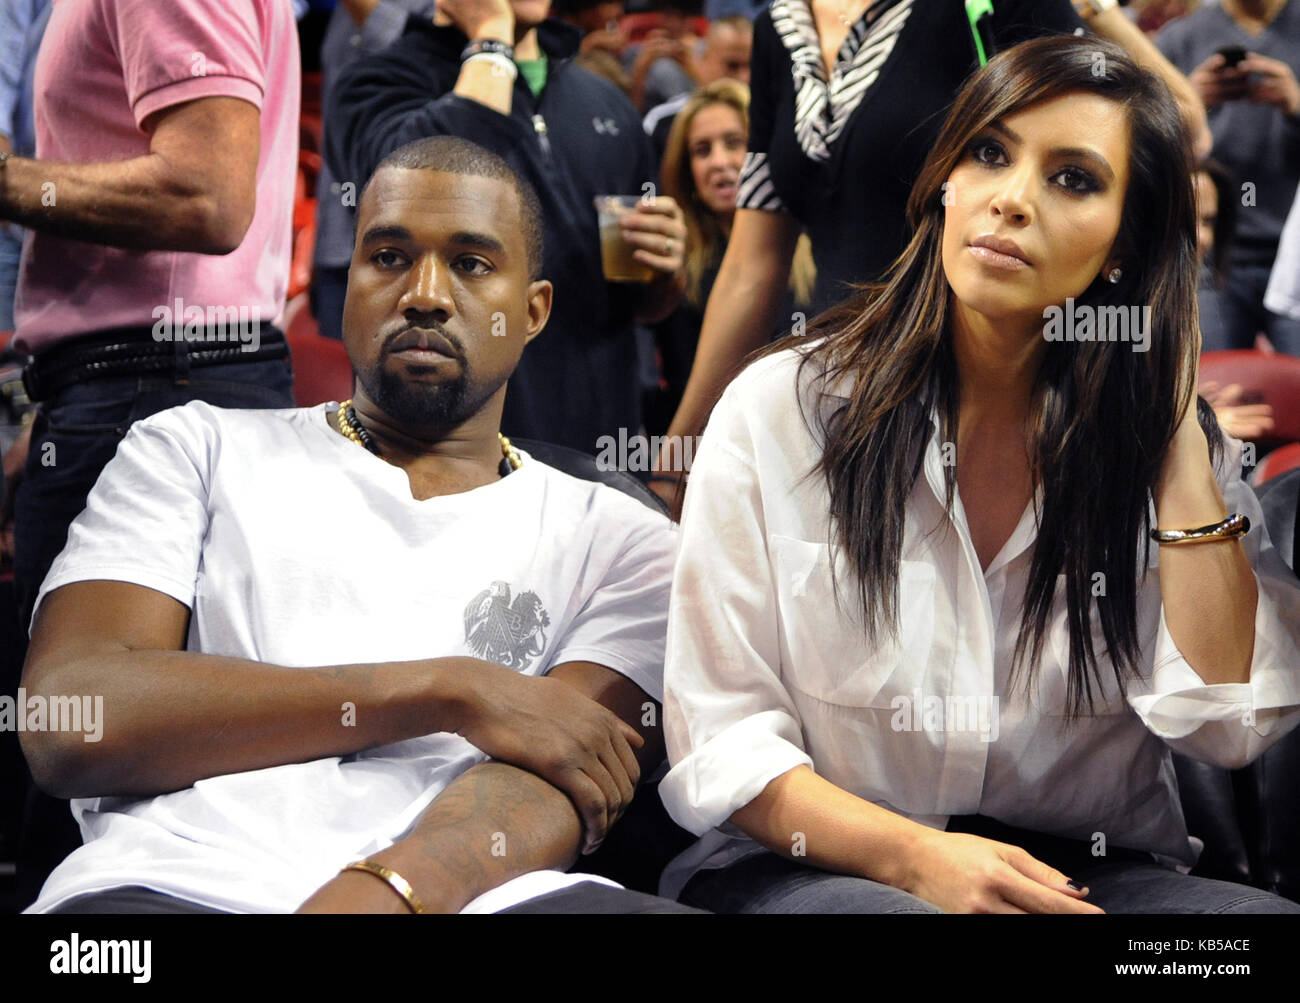 Miami, FL - DÉCEMBRE 06: Kanye West et Kim Kardashian assistent au match entre les Knicks de New York et Miami Heat à American Airlines Arena le 6 décembre 2012 à Miami, en Floride. Crédit Hoo-Me.com / Mediapunch Personnes: Kanye West Kim Kardashian Transmission Ref: Fl77 Banque D'Images